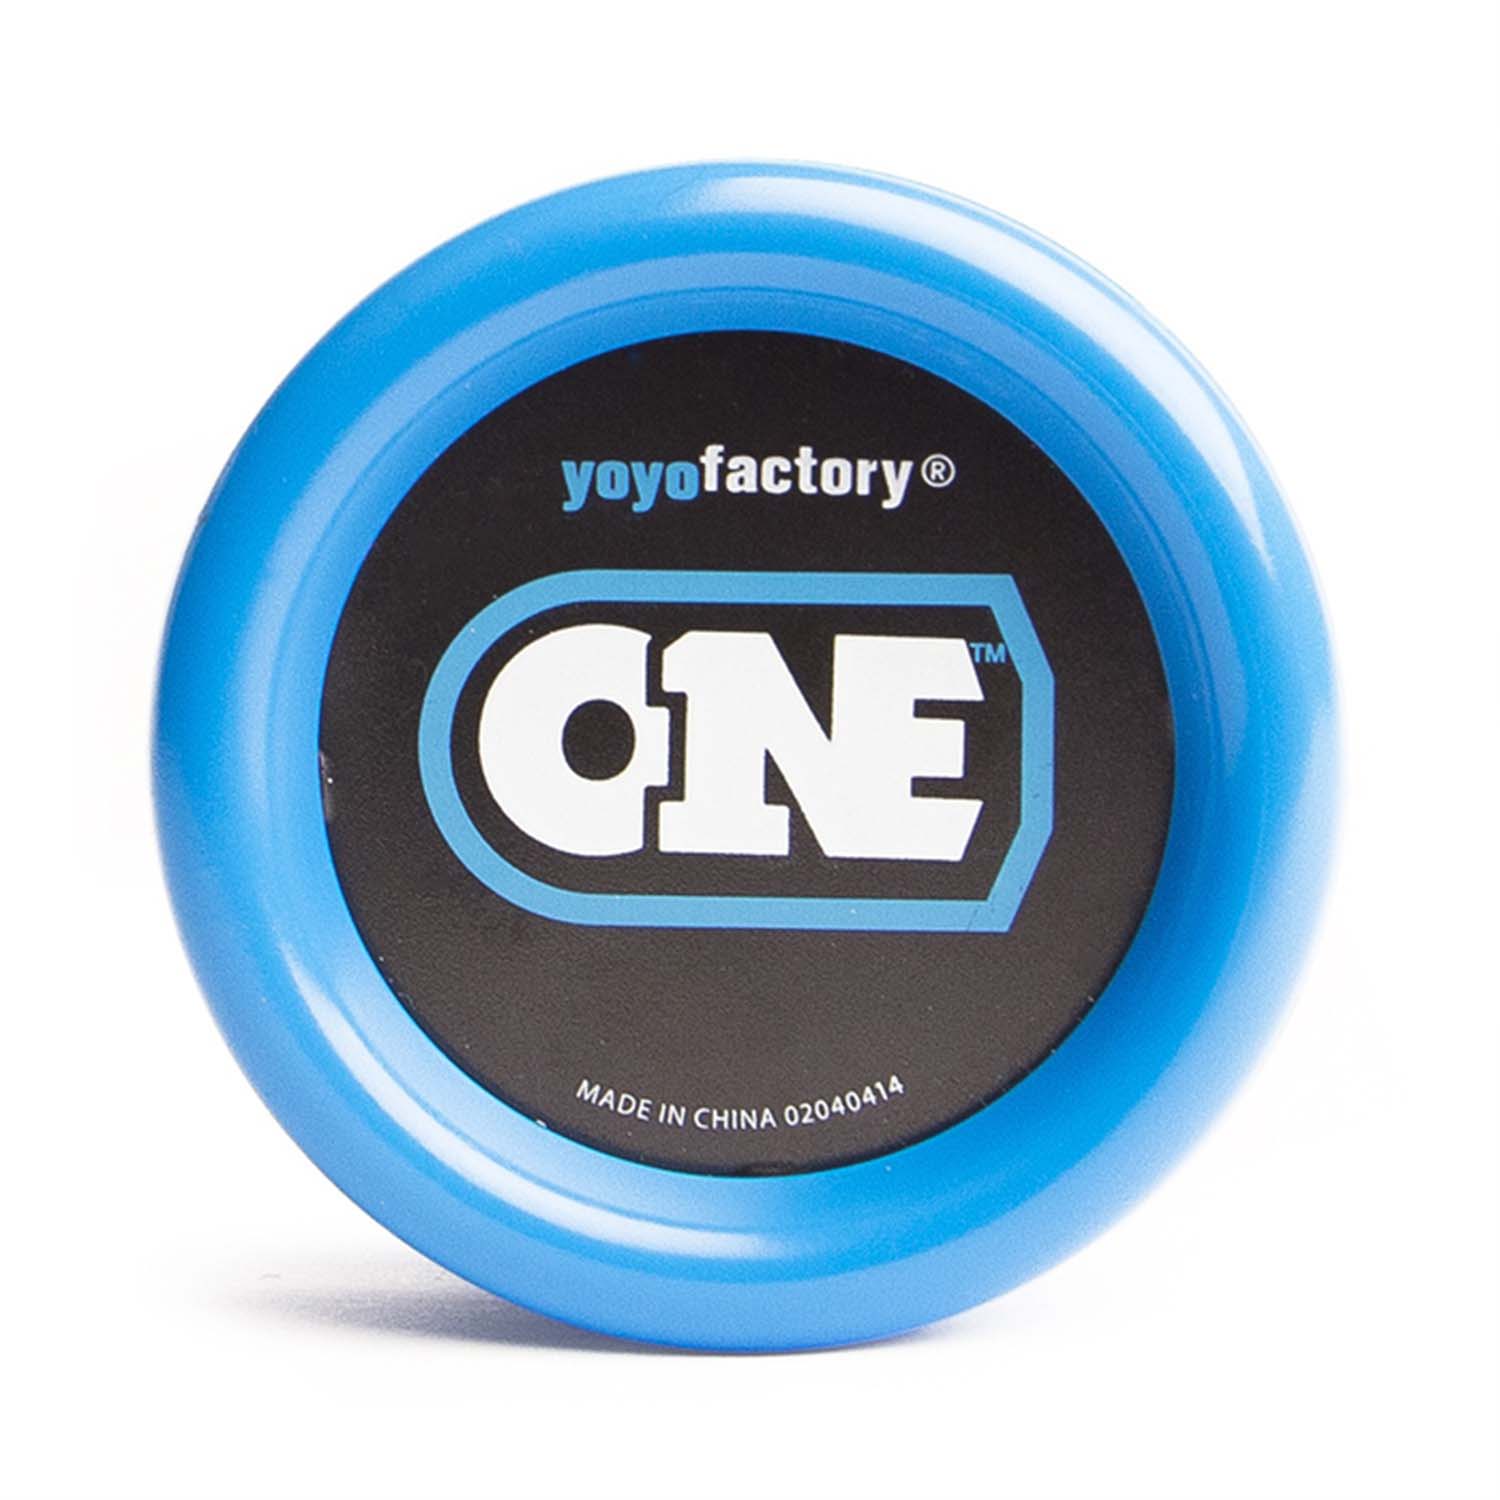 Yoyofactory - Yo Yo One Tm Blau 001